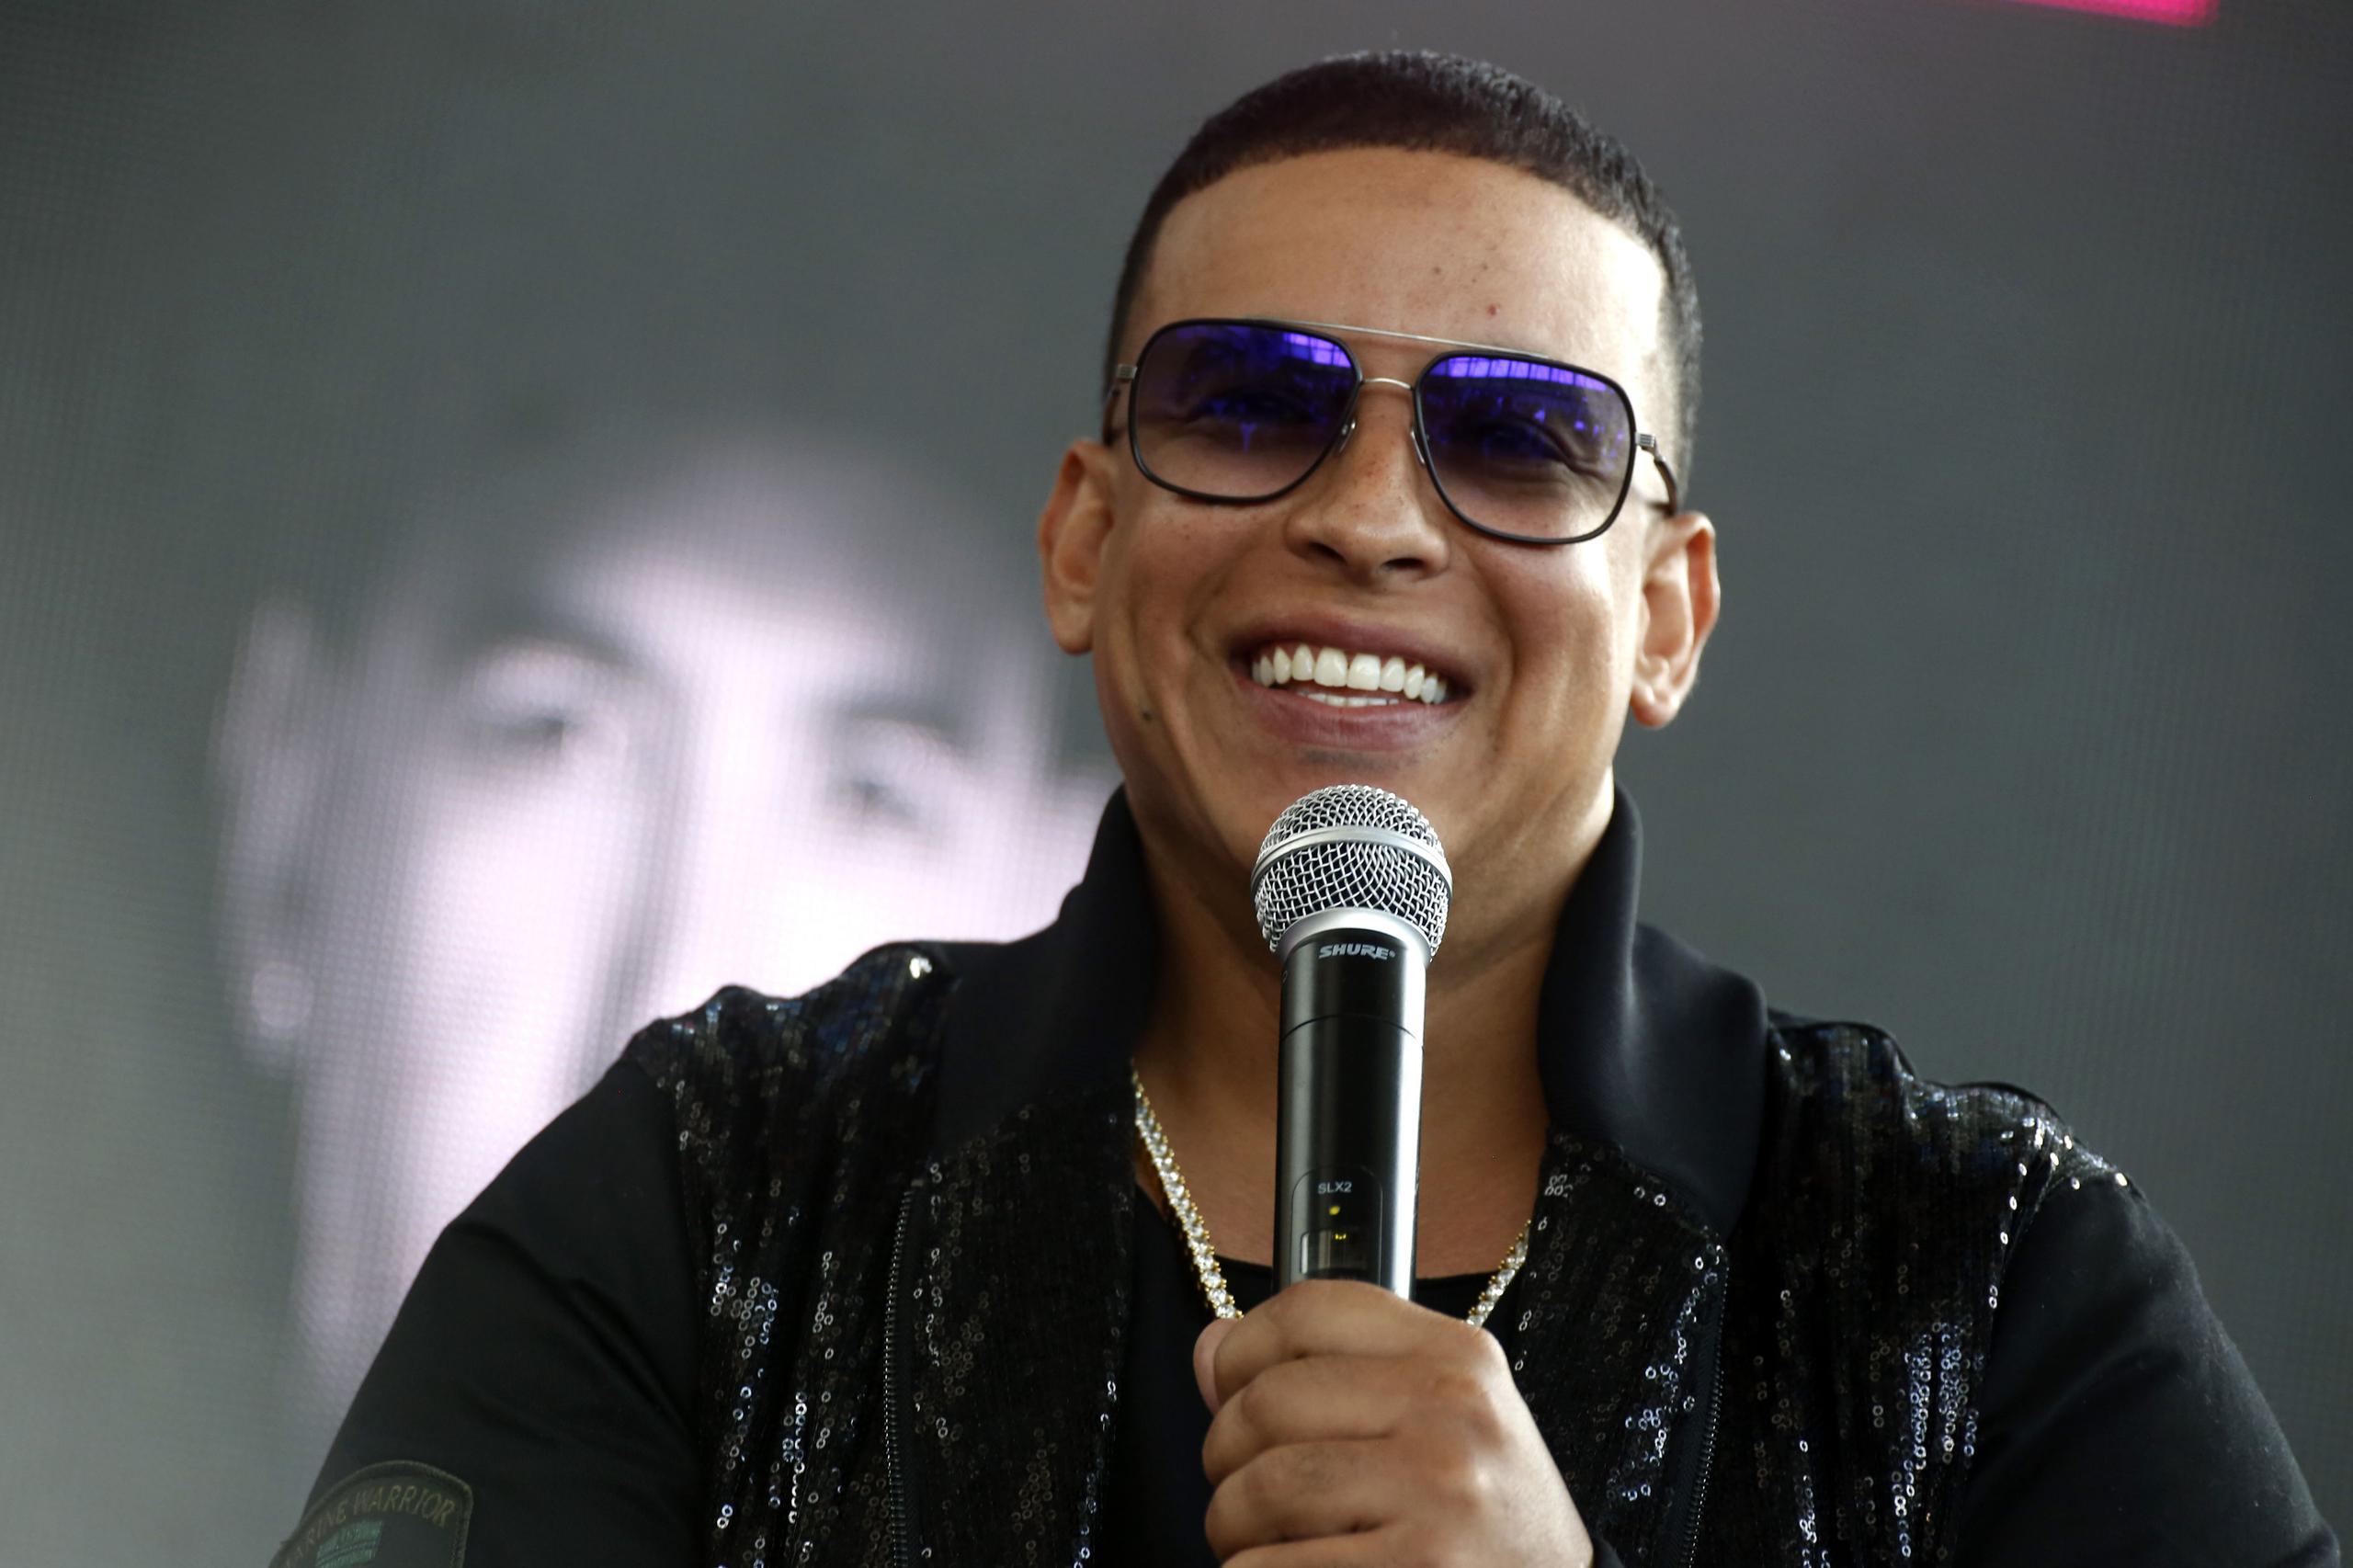 Daddy Yankee arrancó su carrera musical a los 15 años en “Playero 34”, del productor musical DJ Playero, y donde por primera vez se escuchó la palabra reguetón o reggaeton.